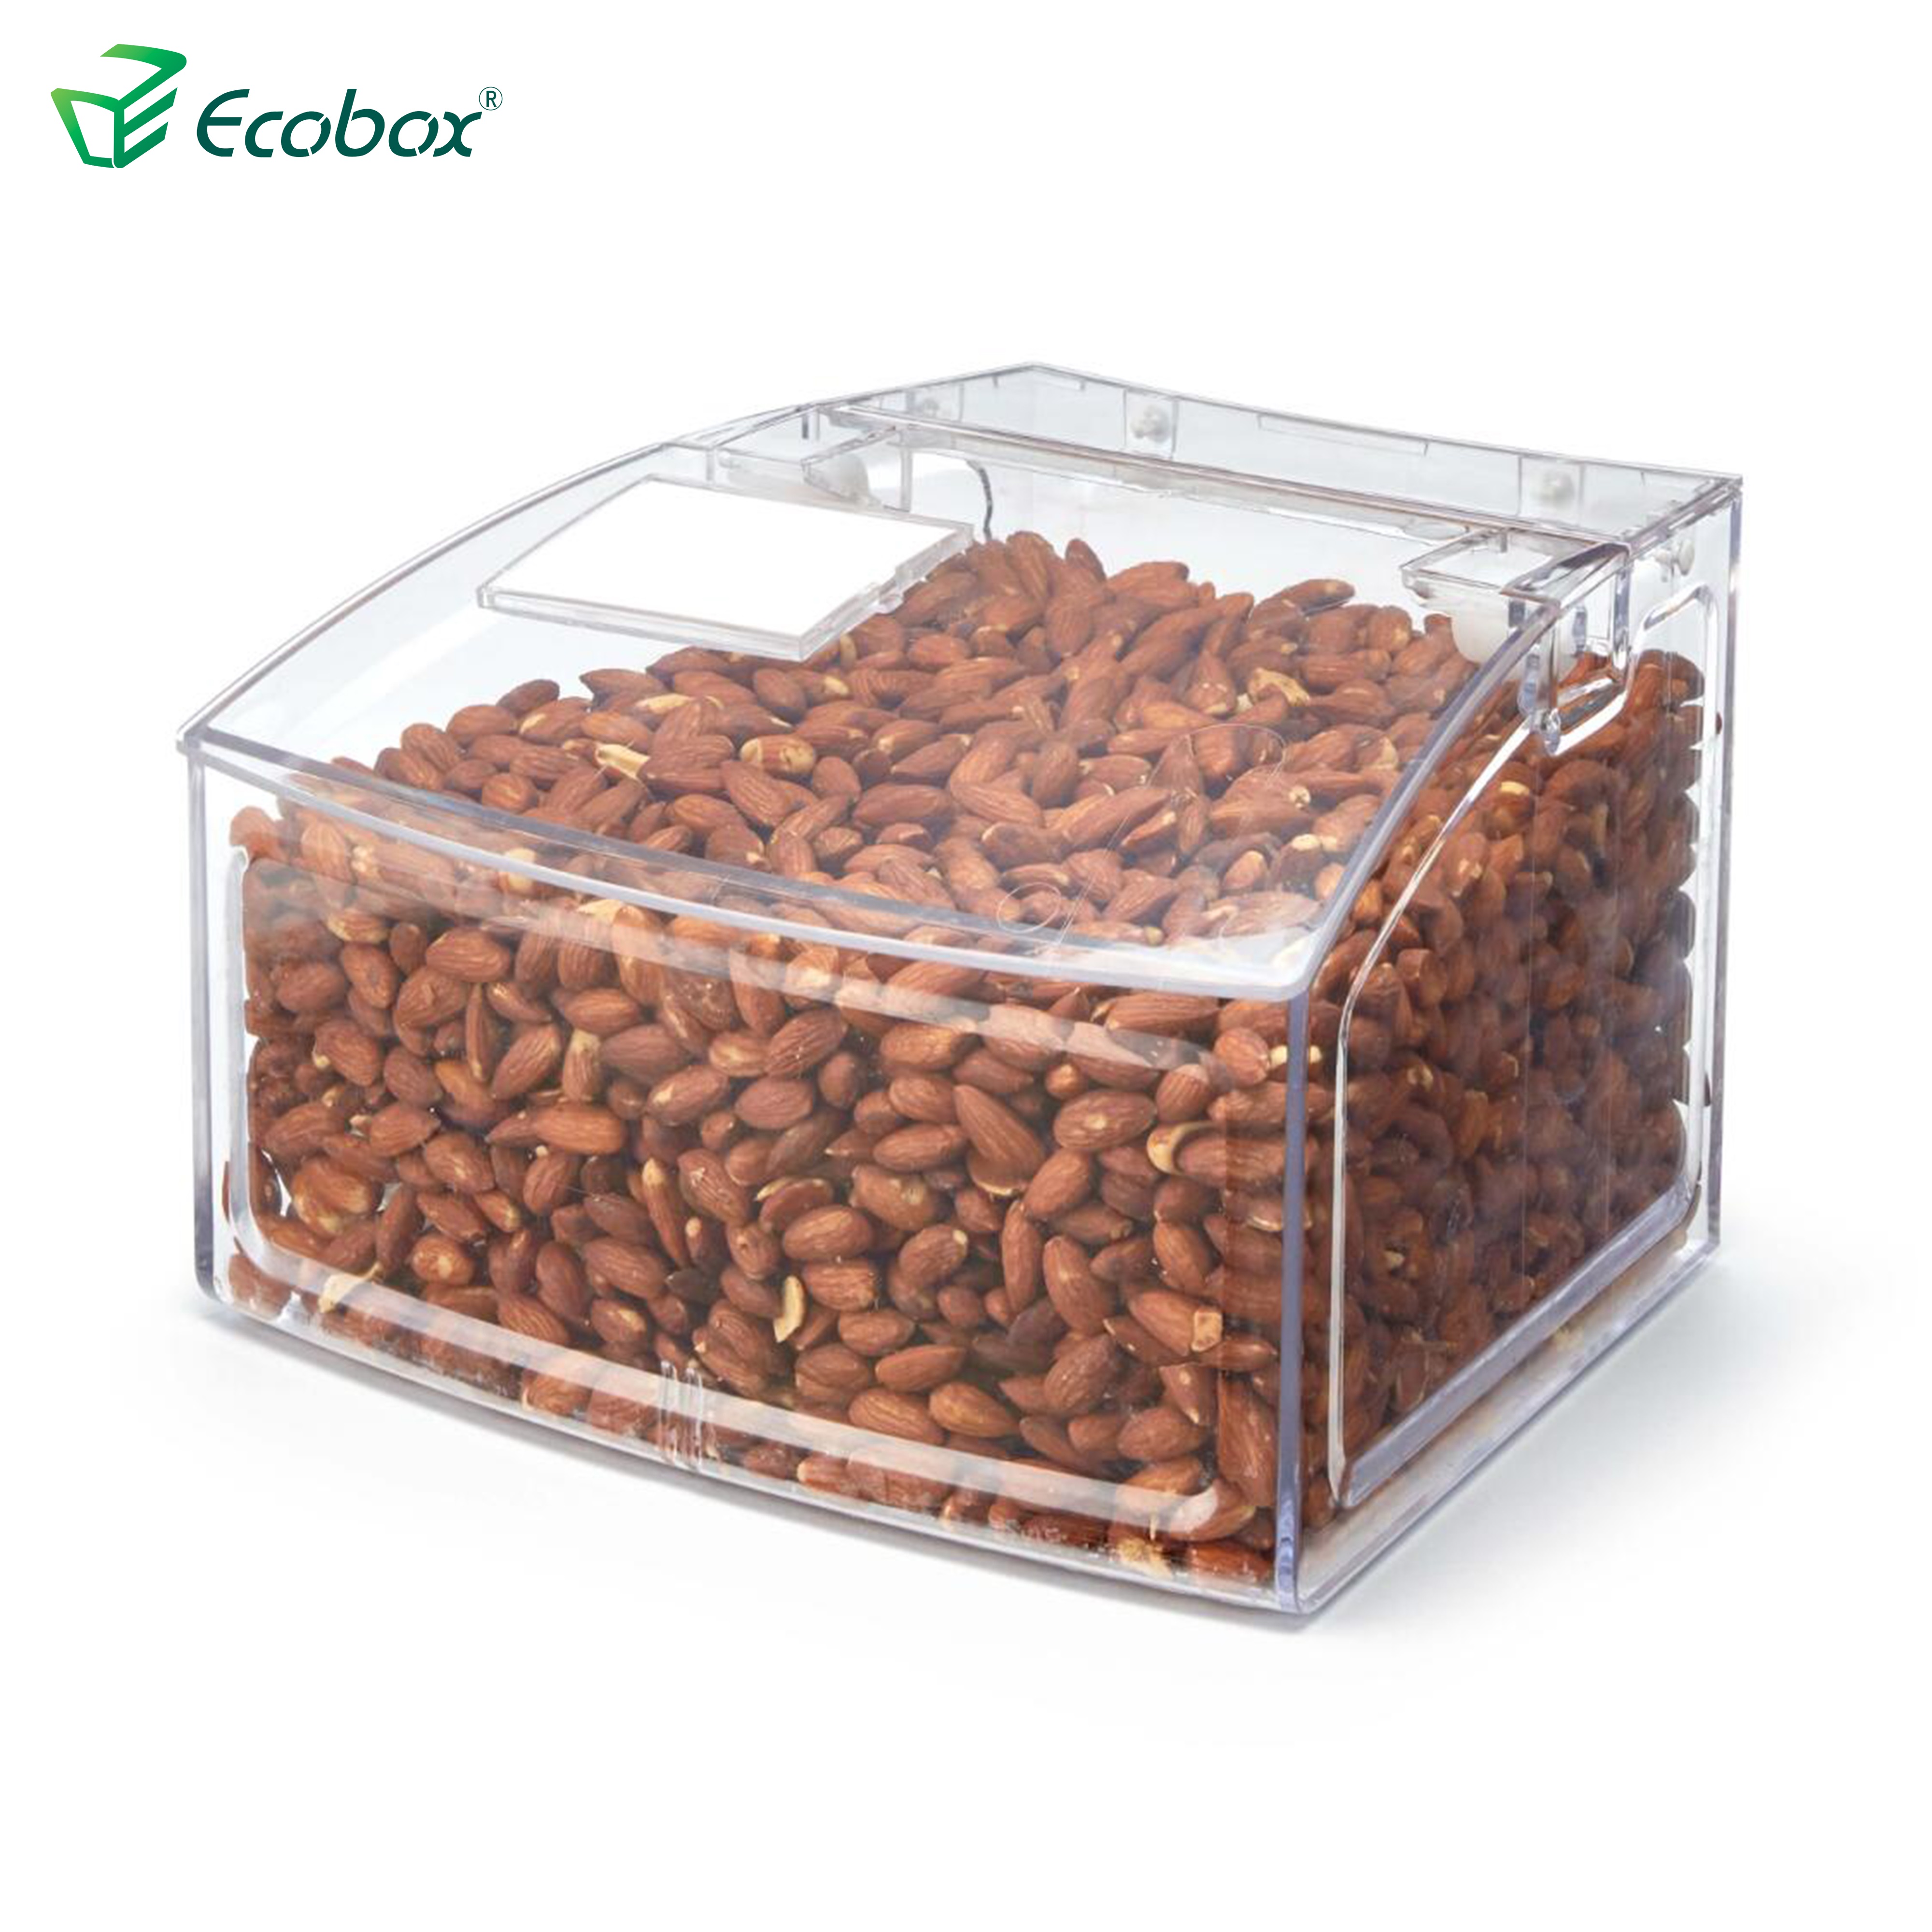 Ecobox SPH-009 Bogenform Massennahrungsmittelbehälter für Supermarkt Lebensmittelindustrie